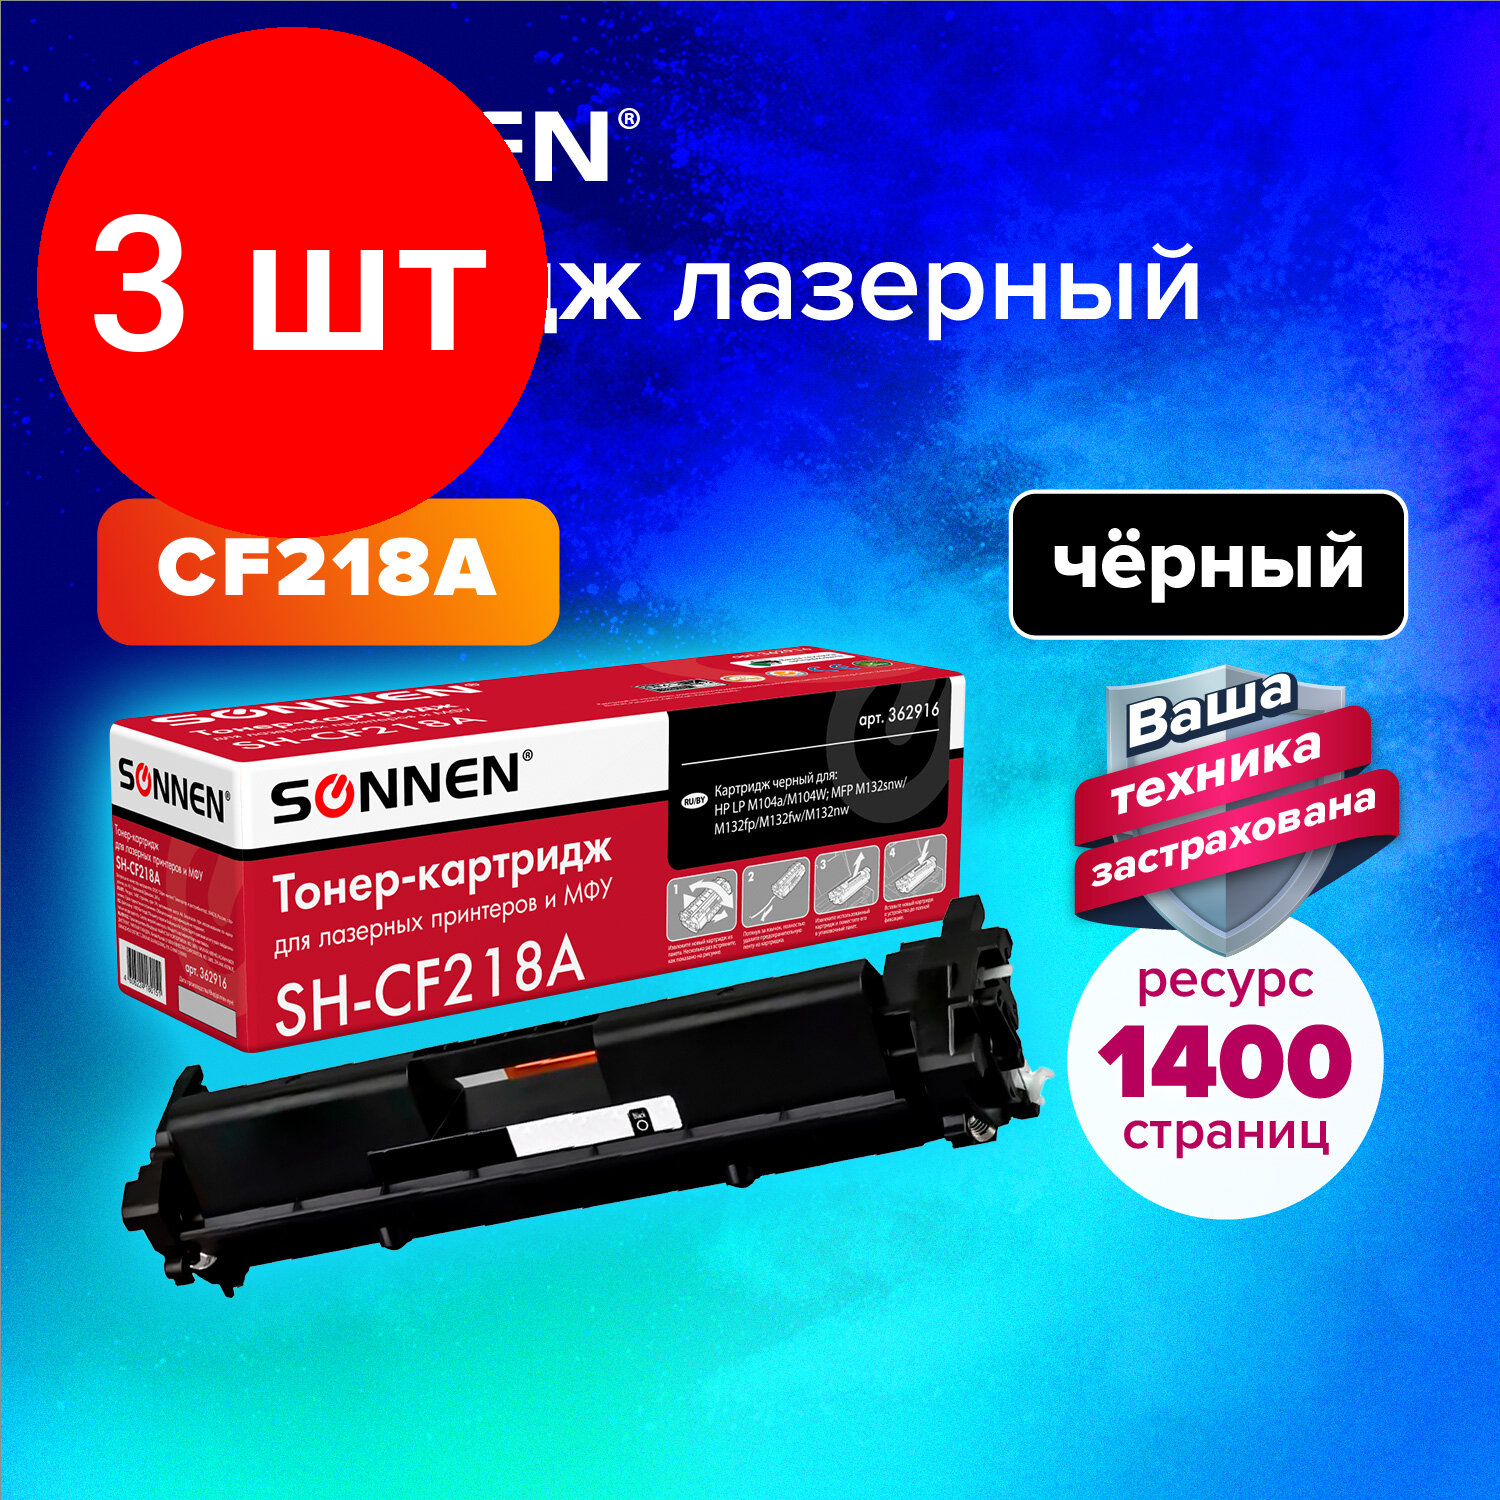 Комплект 3 шт, Картридж лазерный SONNEN (SH-CF218A) для HP LaserJet M132/M104, высшее качество, ресурс 1400 стр., 362916